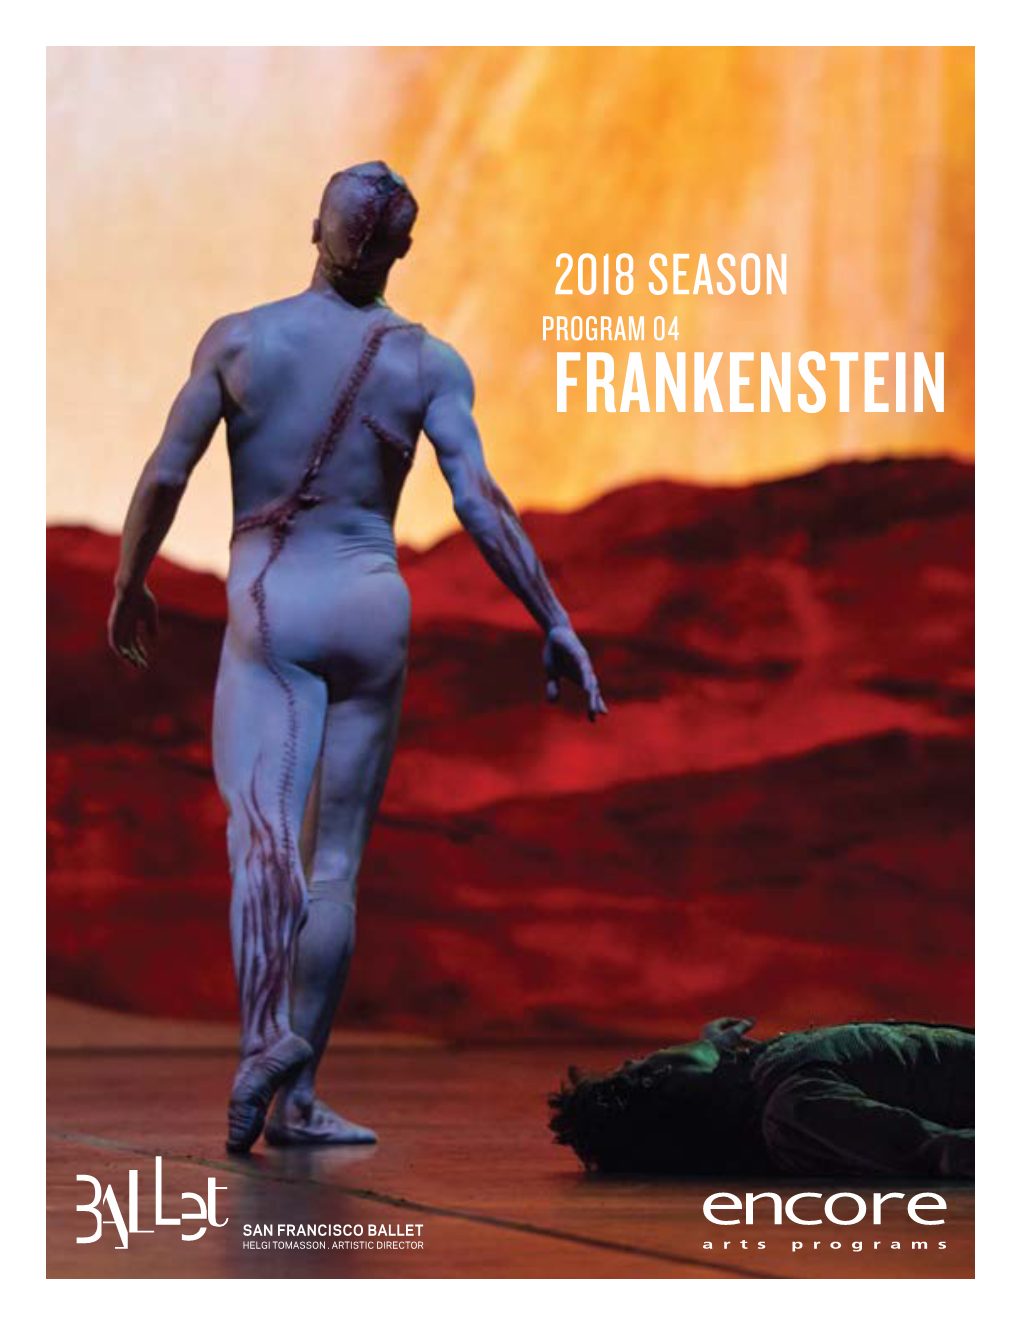 Frankenstein at SF Ballet